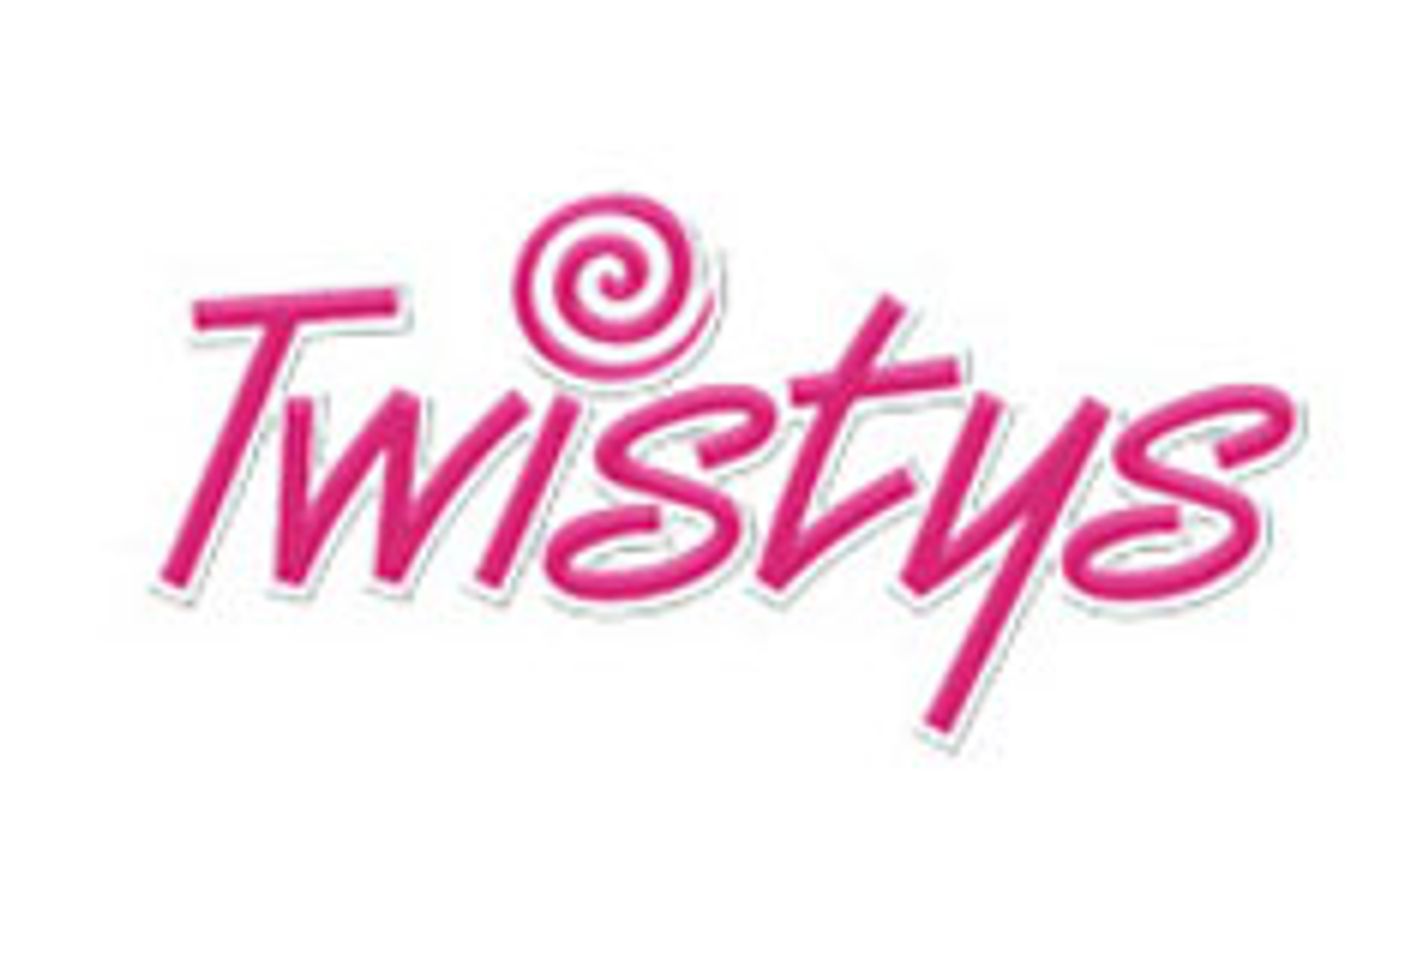 Twistys Models Appear at Vanity Fan Expo Tomorrow